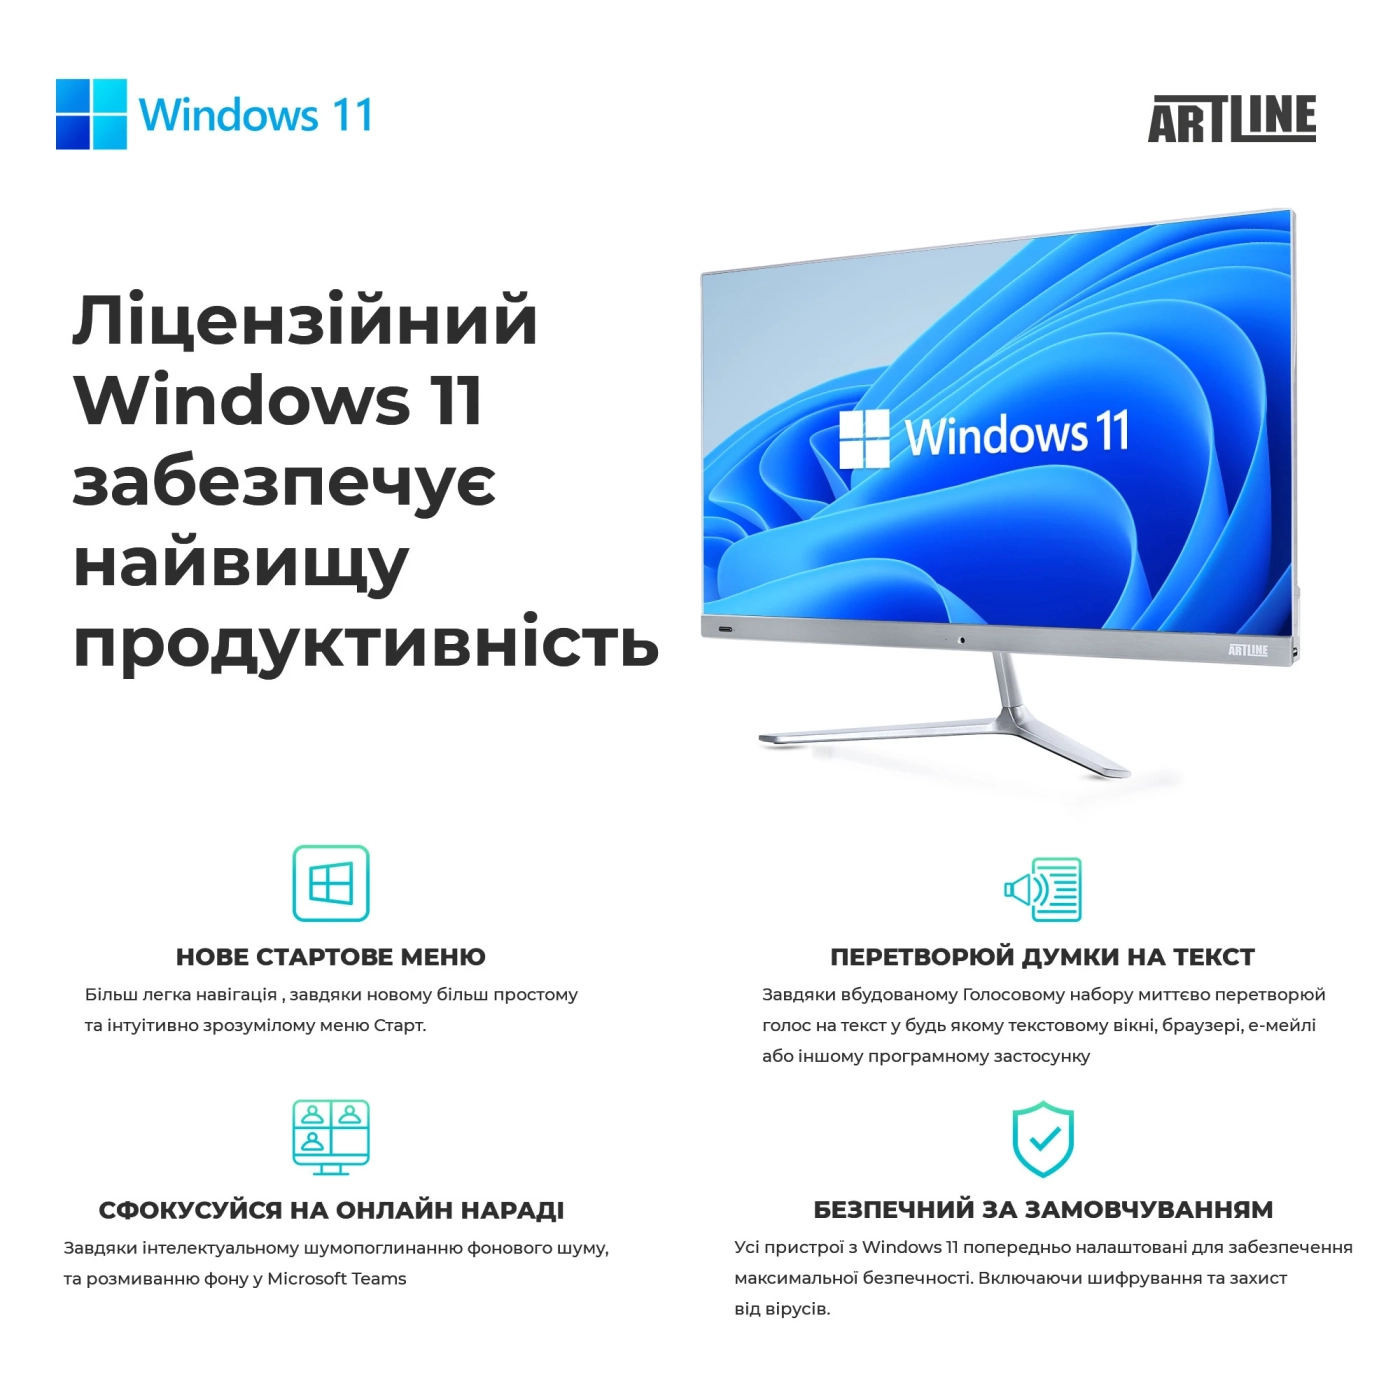 Купить Рабочая станция ARTLINE WorkStation W99 Windows 11 Pro (W99v72Win) - фото 11